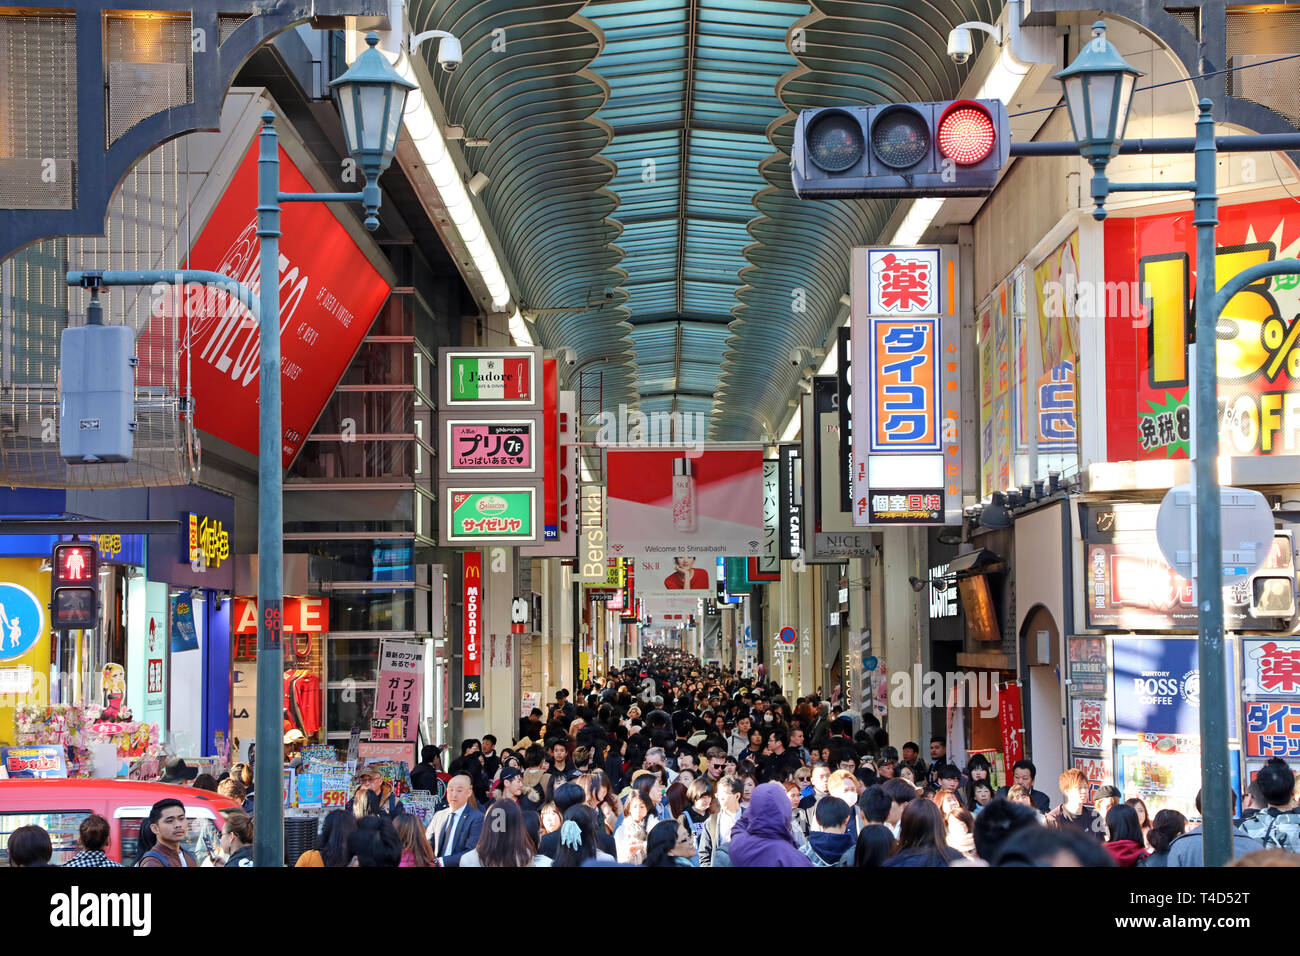 Shinsaibashi covered shopping street, Osaka, Japan Stock Photo